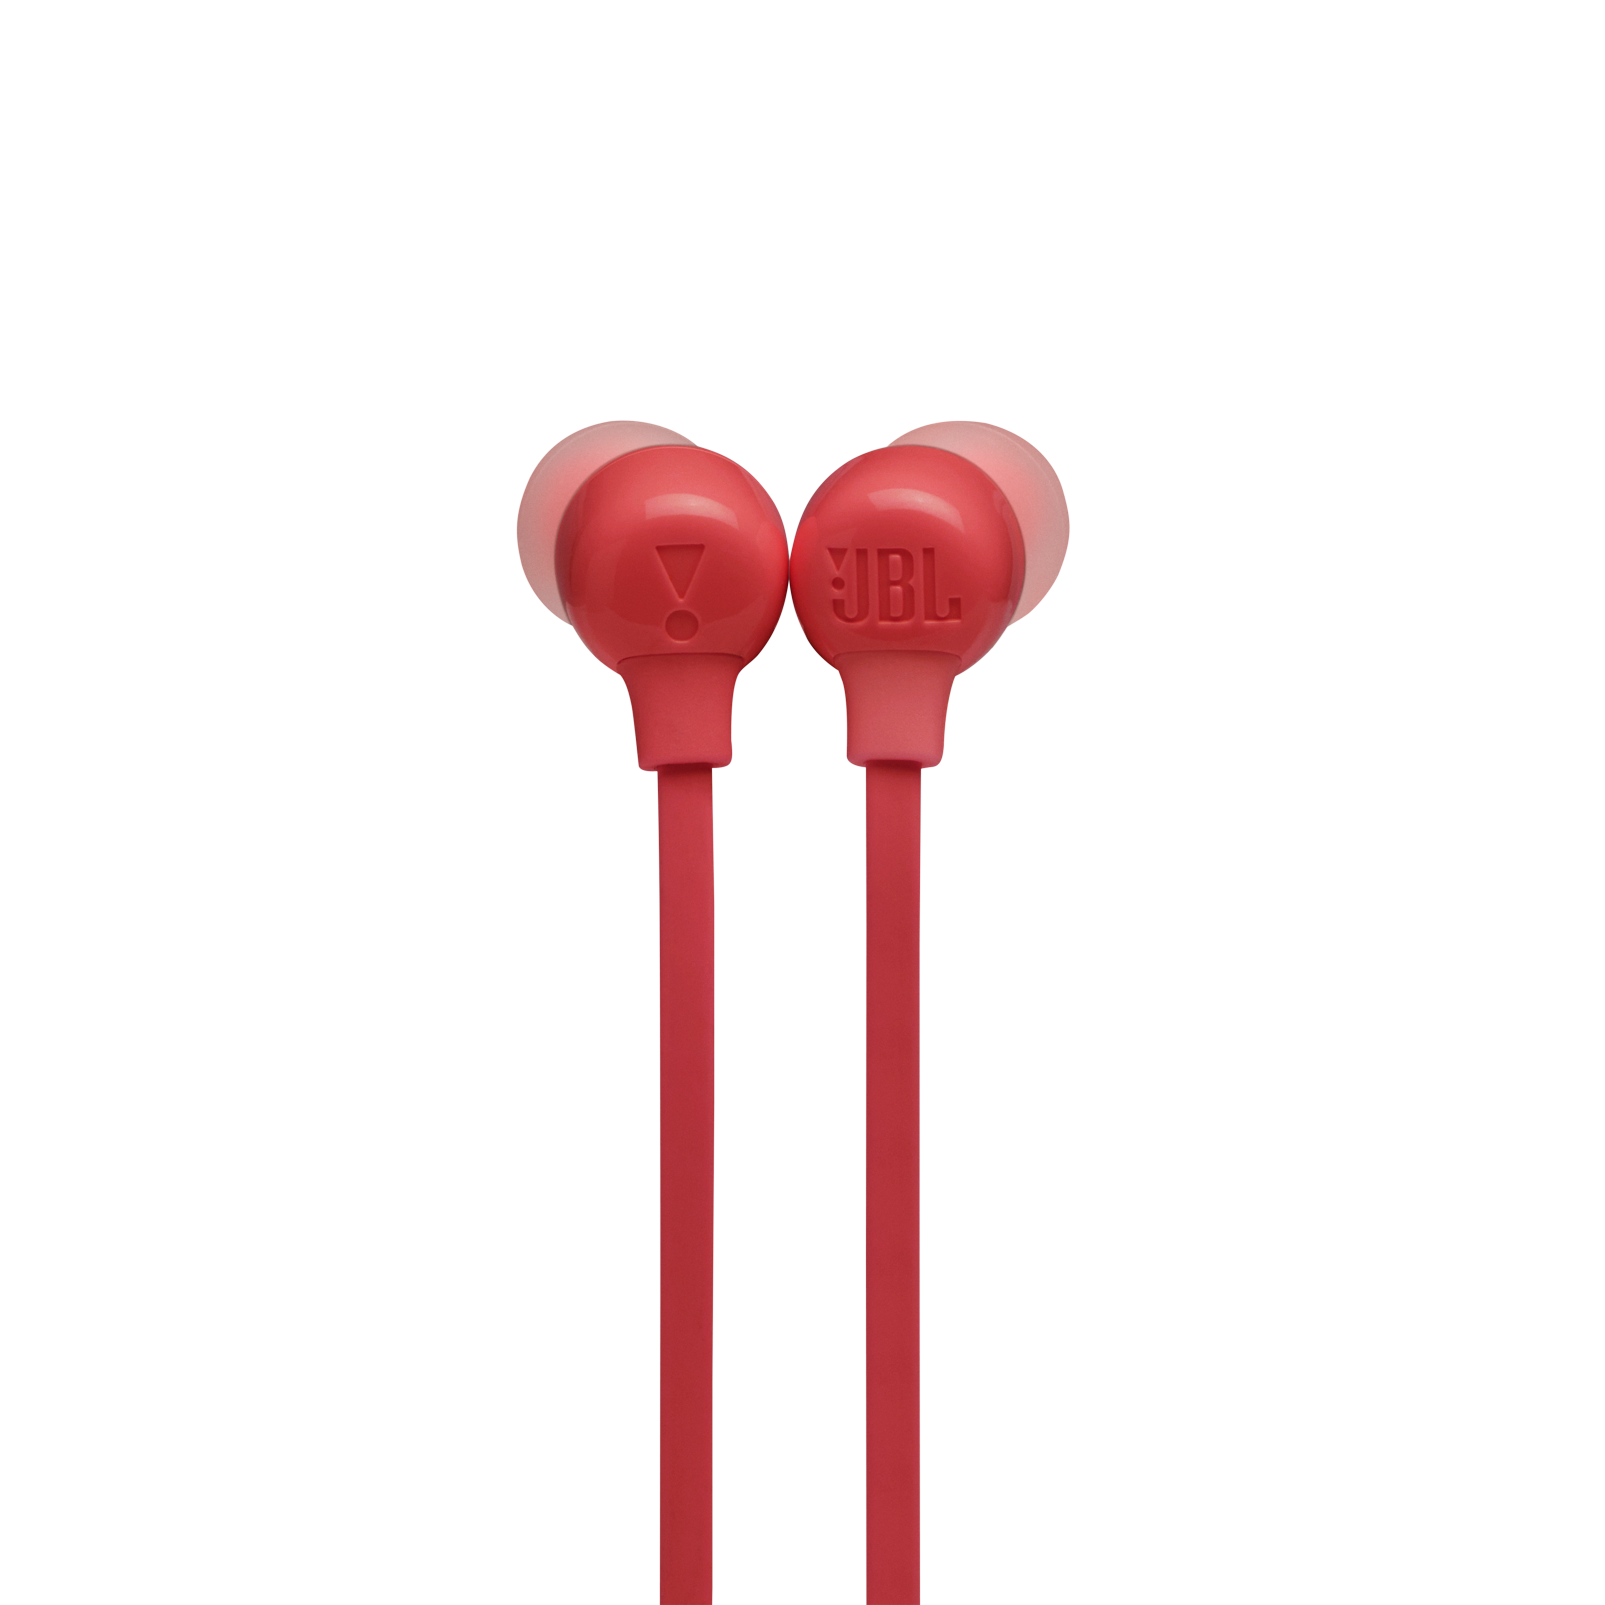 JBL Tune 125BT - Coral Orange - Wireless in-ear headphones - Detailshot 1